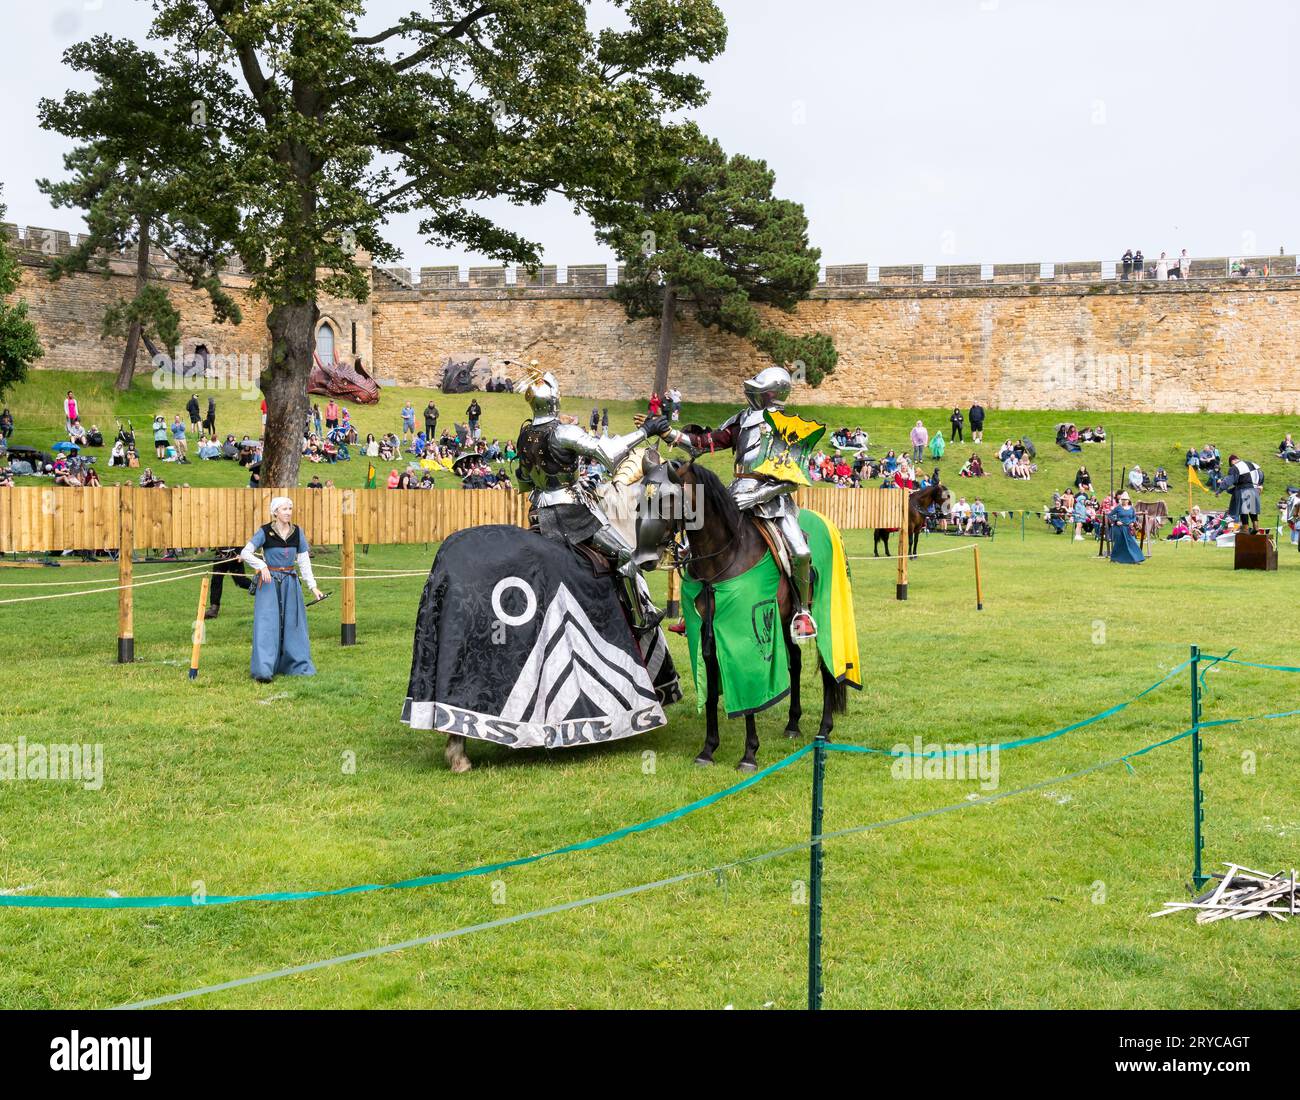 Deux chevaliers à cheval se saluant pendant l'événement de joute, Lincoln Castle, Lincoln City, Lincolnshire, Angleterre, ROYAUME-UNI Banque D'Images